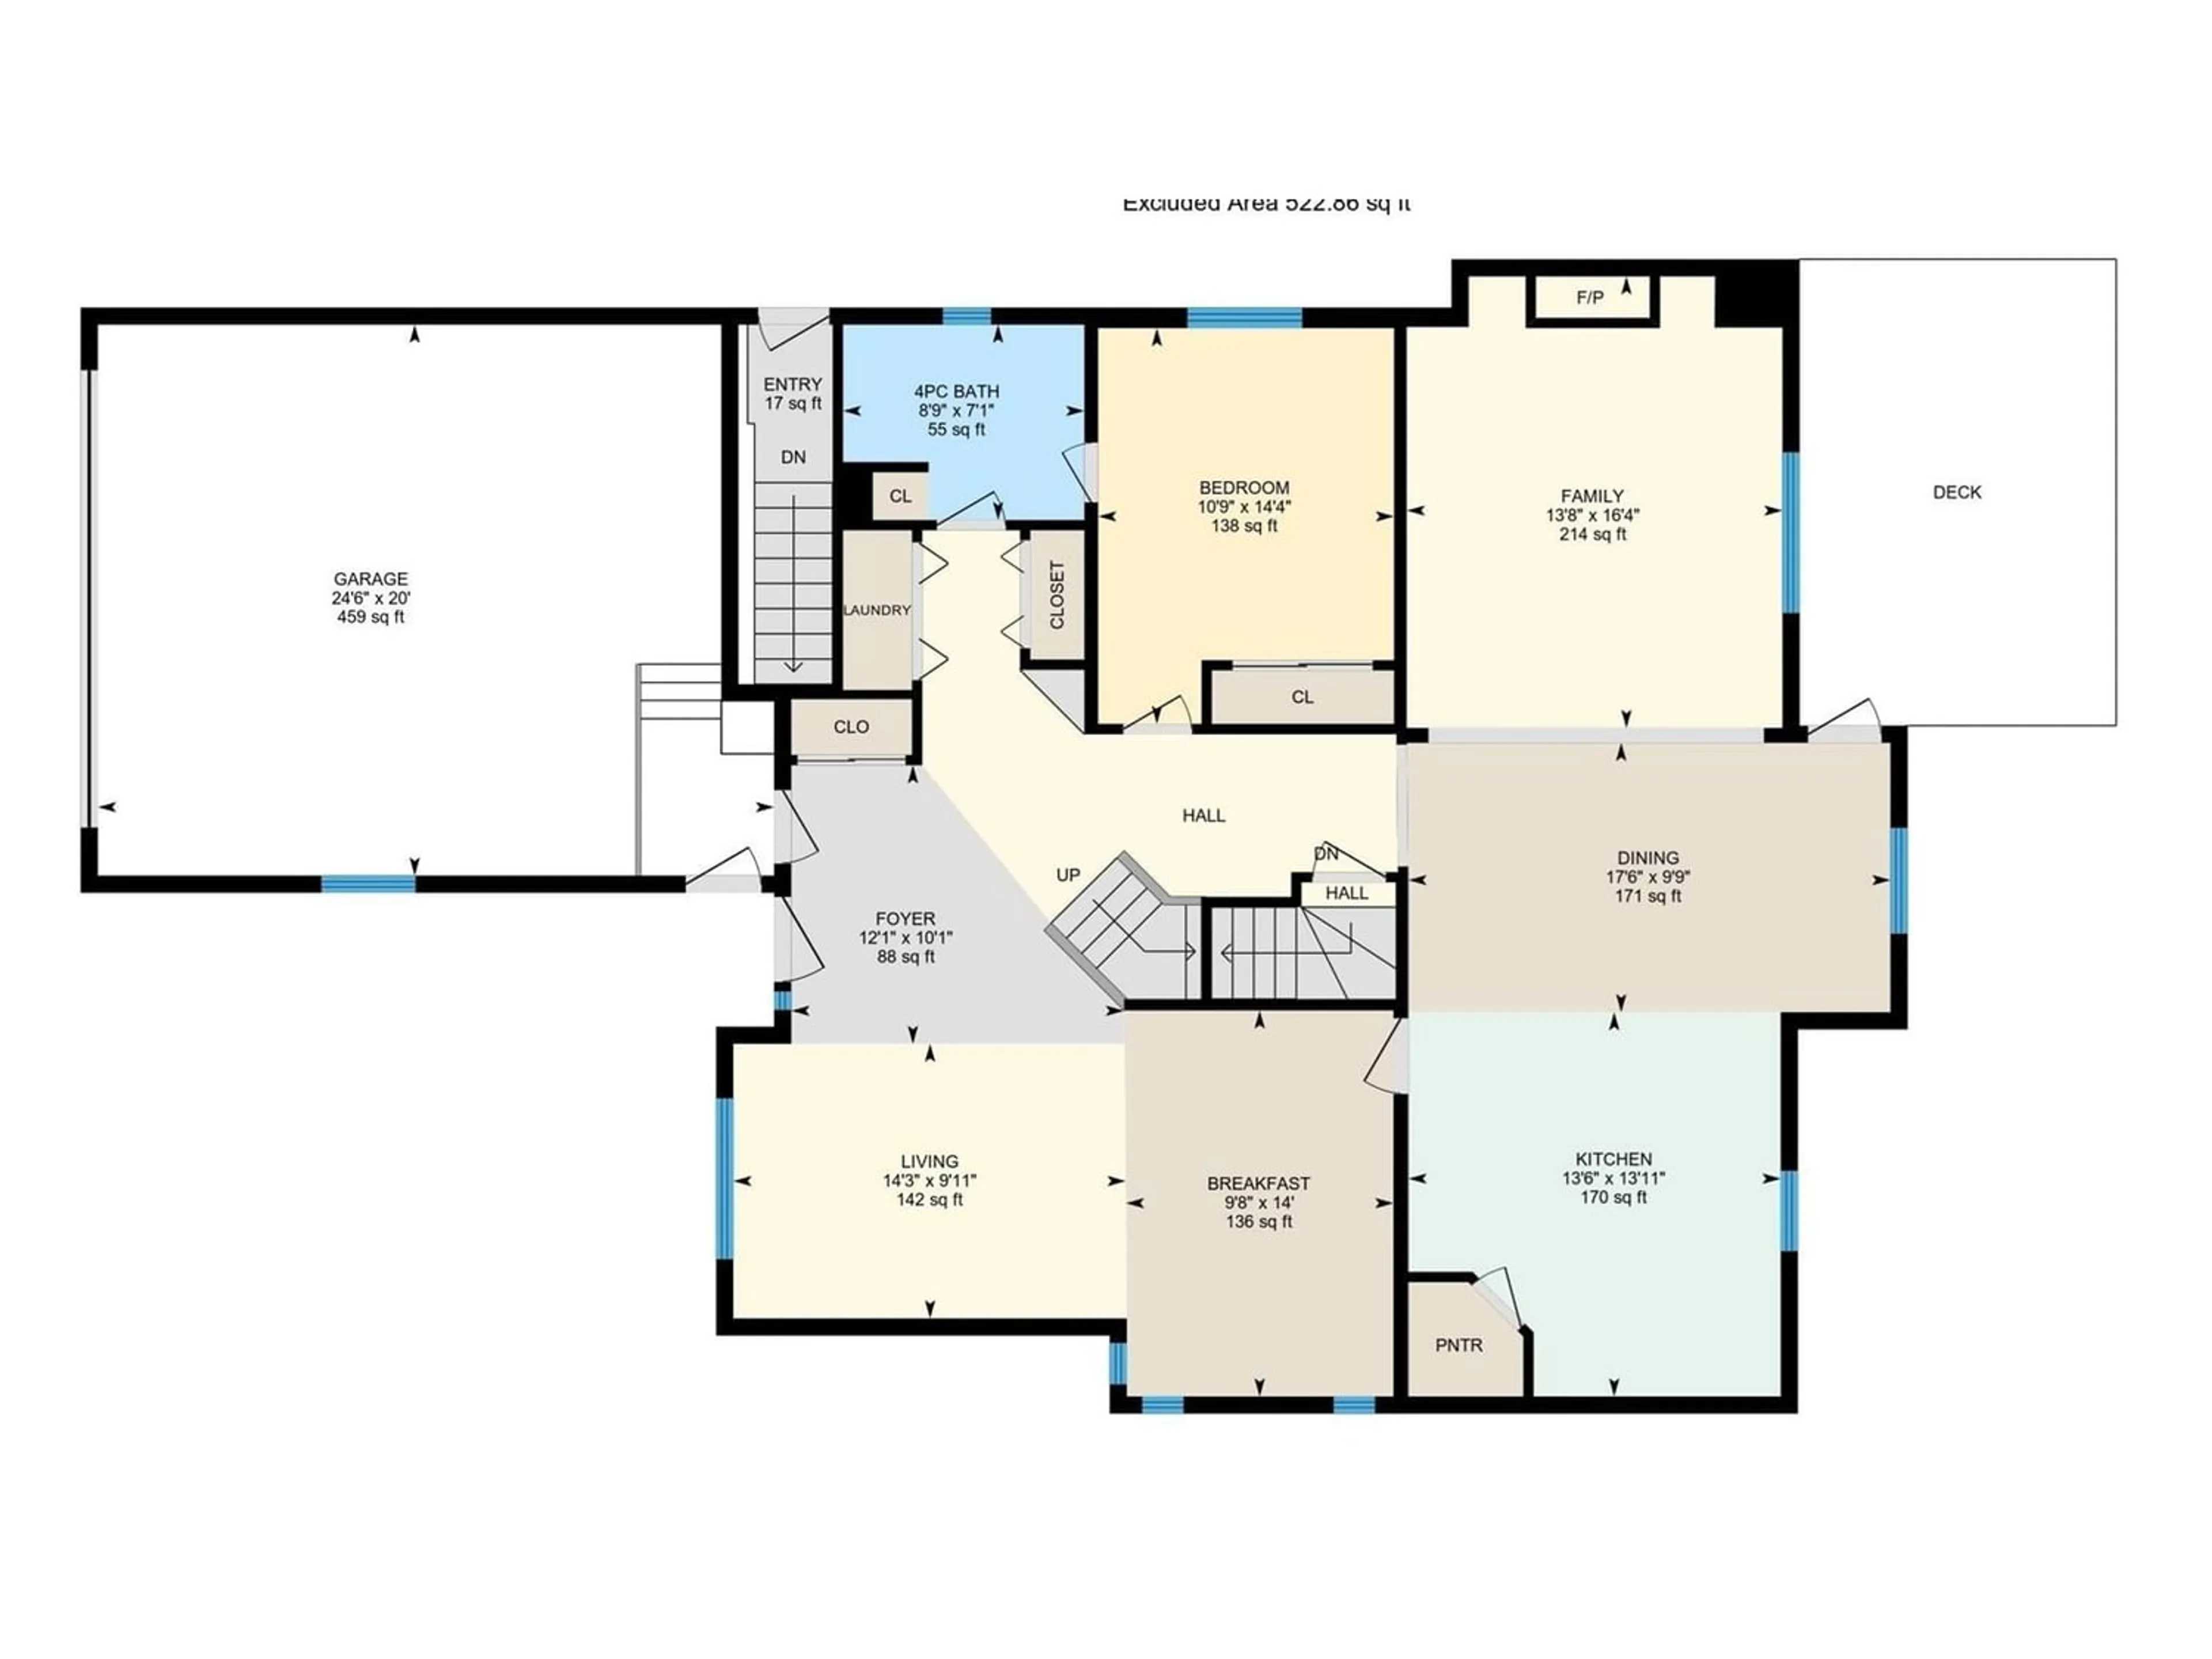 Floor plan for 2435 HAGEN WY NW, Edmonton Alberta T6R3L5